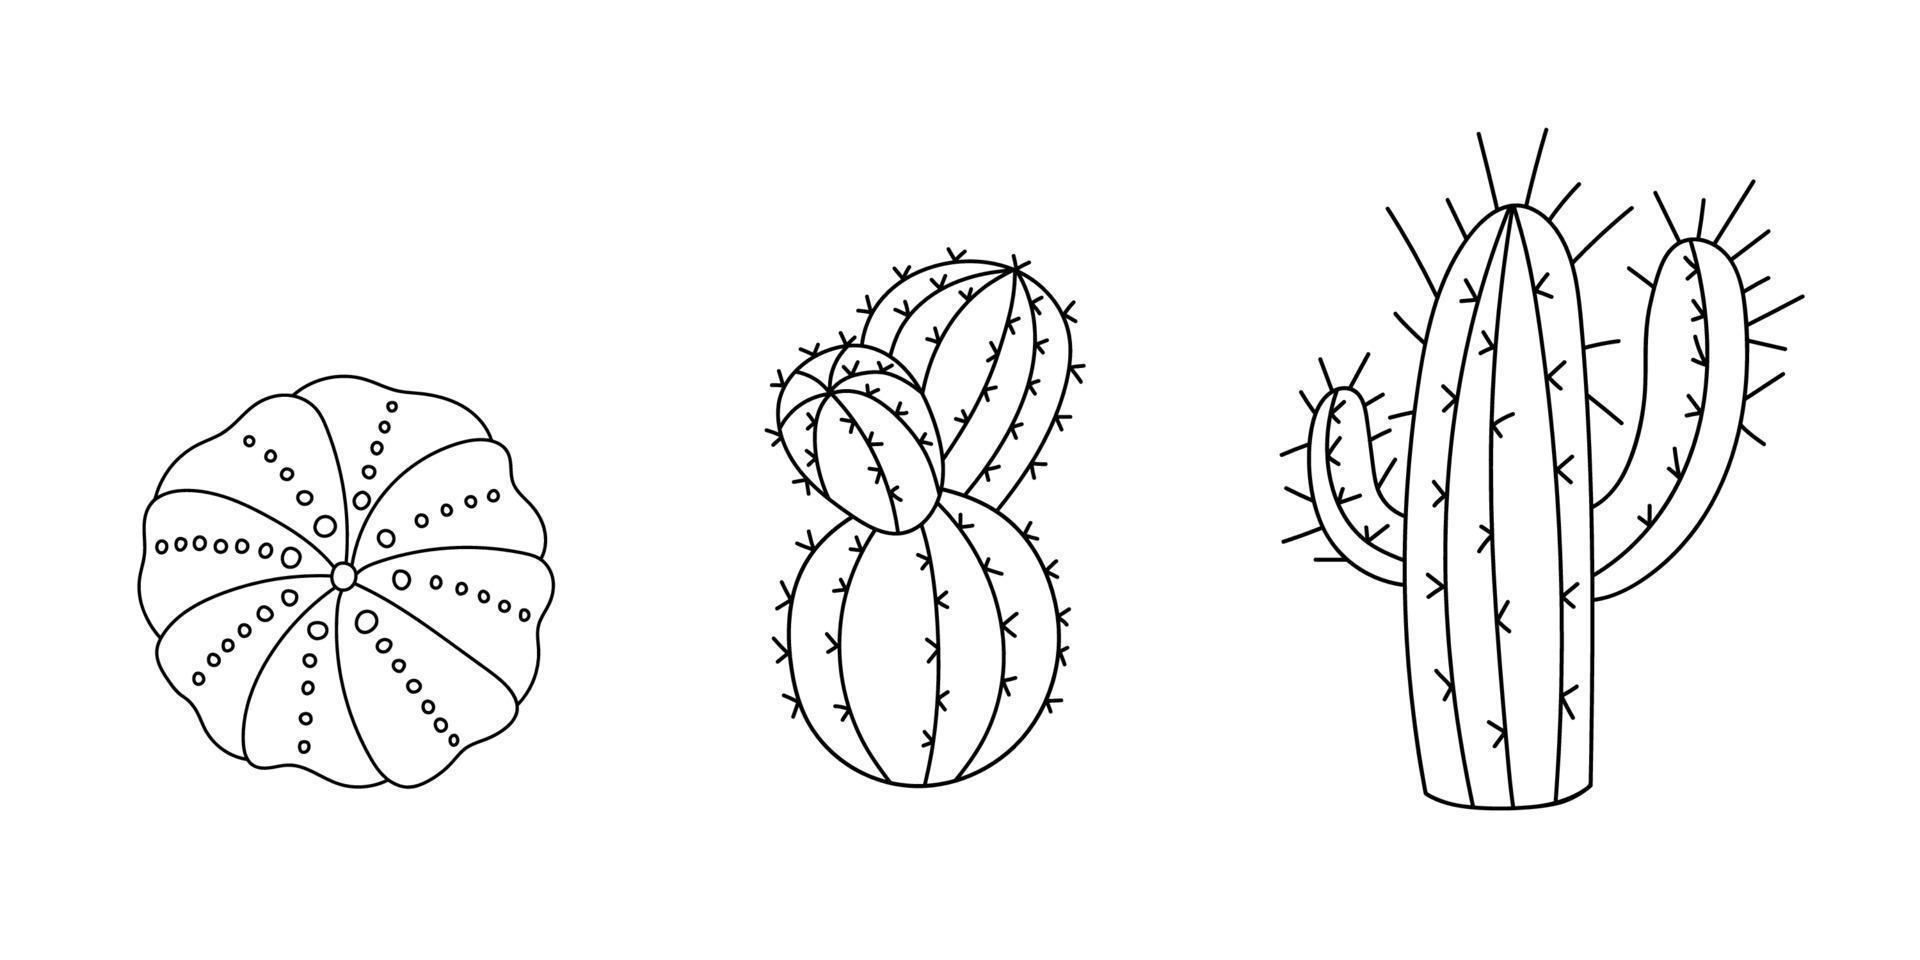 cacto definido do deserto em estilo doodle. suculenta desenhada por linha. planta em casa de esboço gráfico. ilustração vetorial, elementos pretos isolados para impressão e design. silhueta de uma flor mexicana vetor